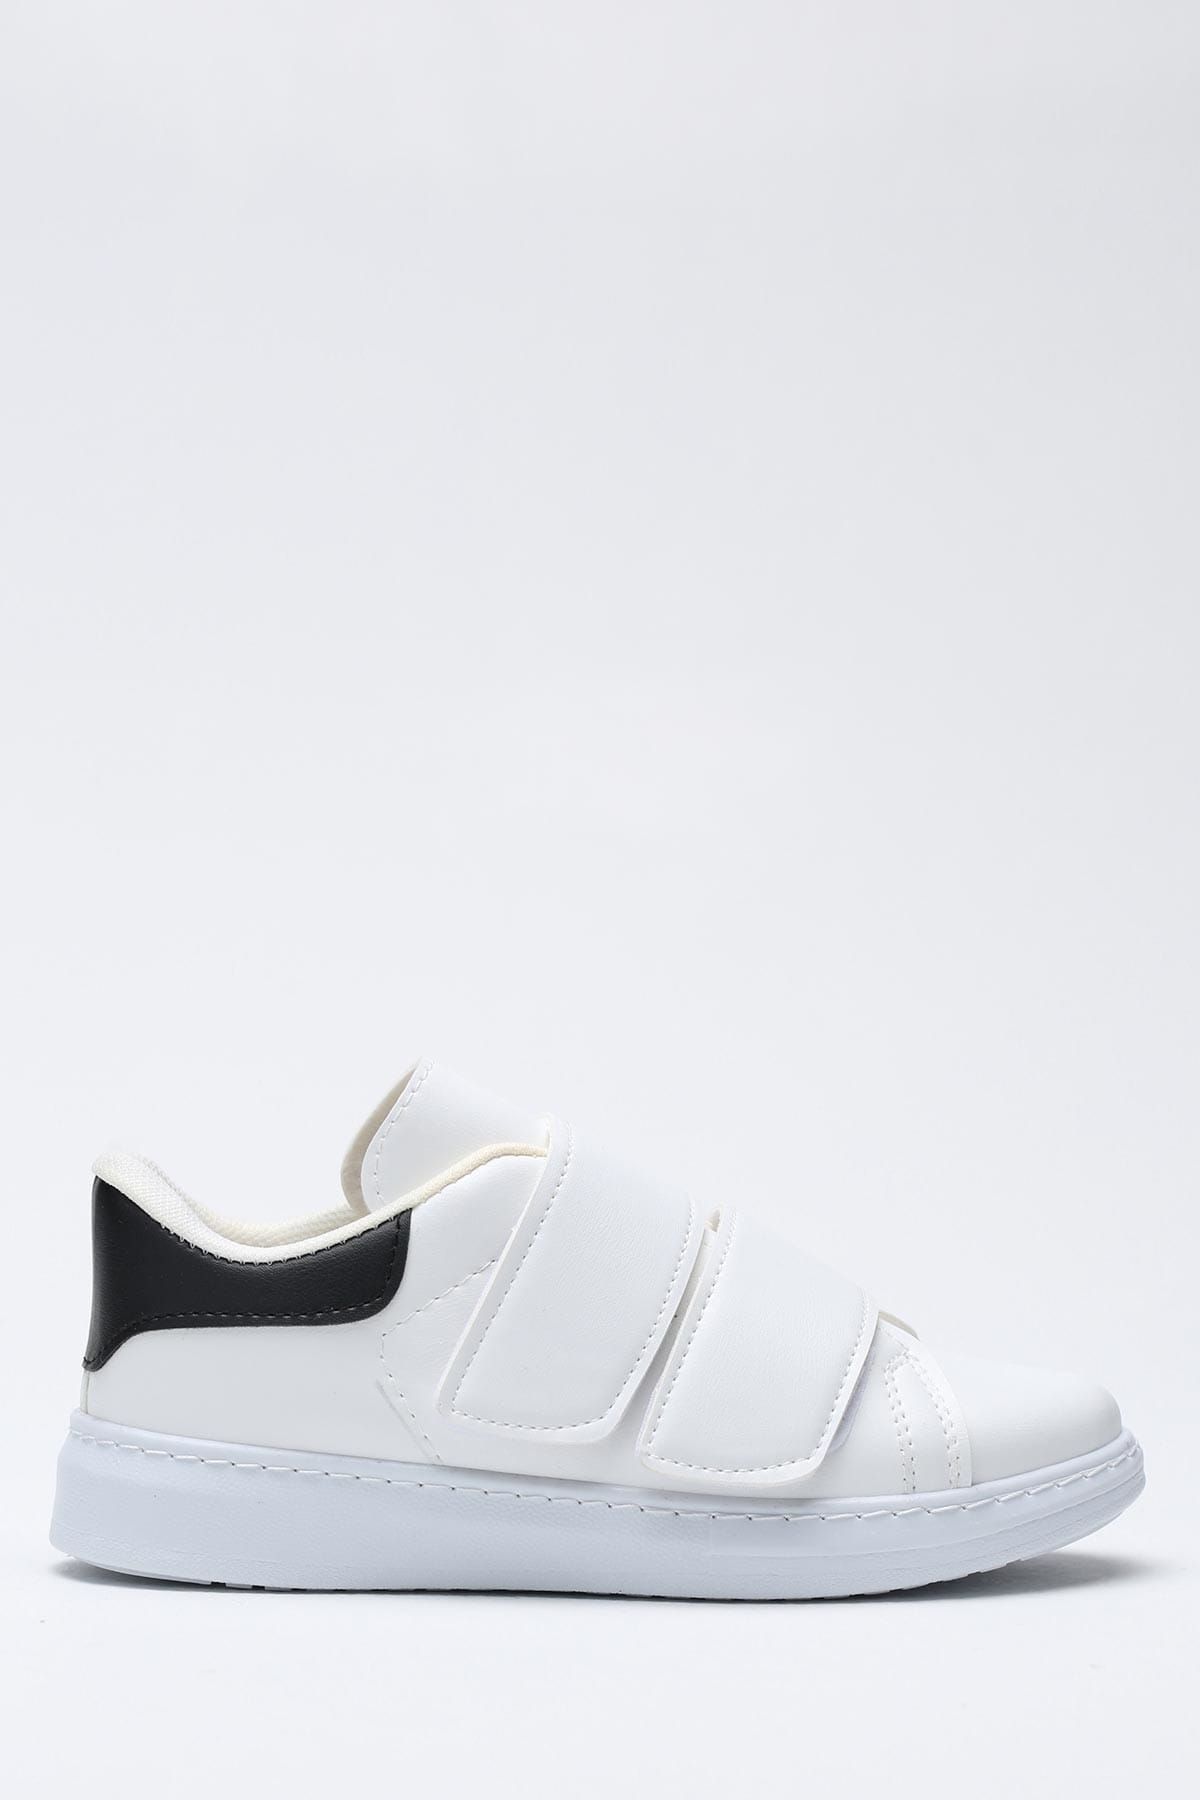 Ayakkabı Modası Beyaz Siyah Kadın Spor Ayakkabı 1938-9-4204-1